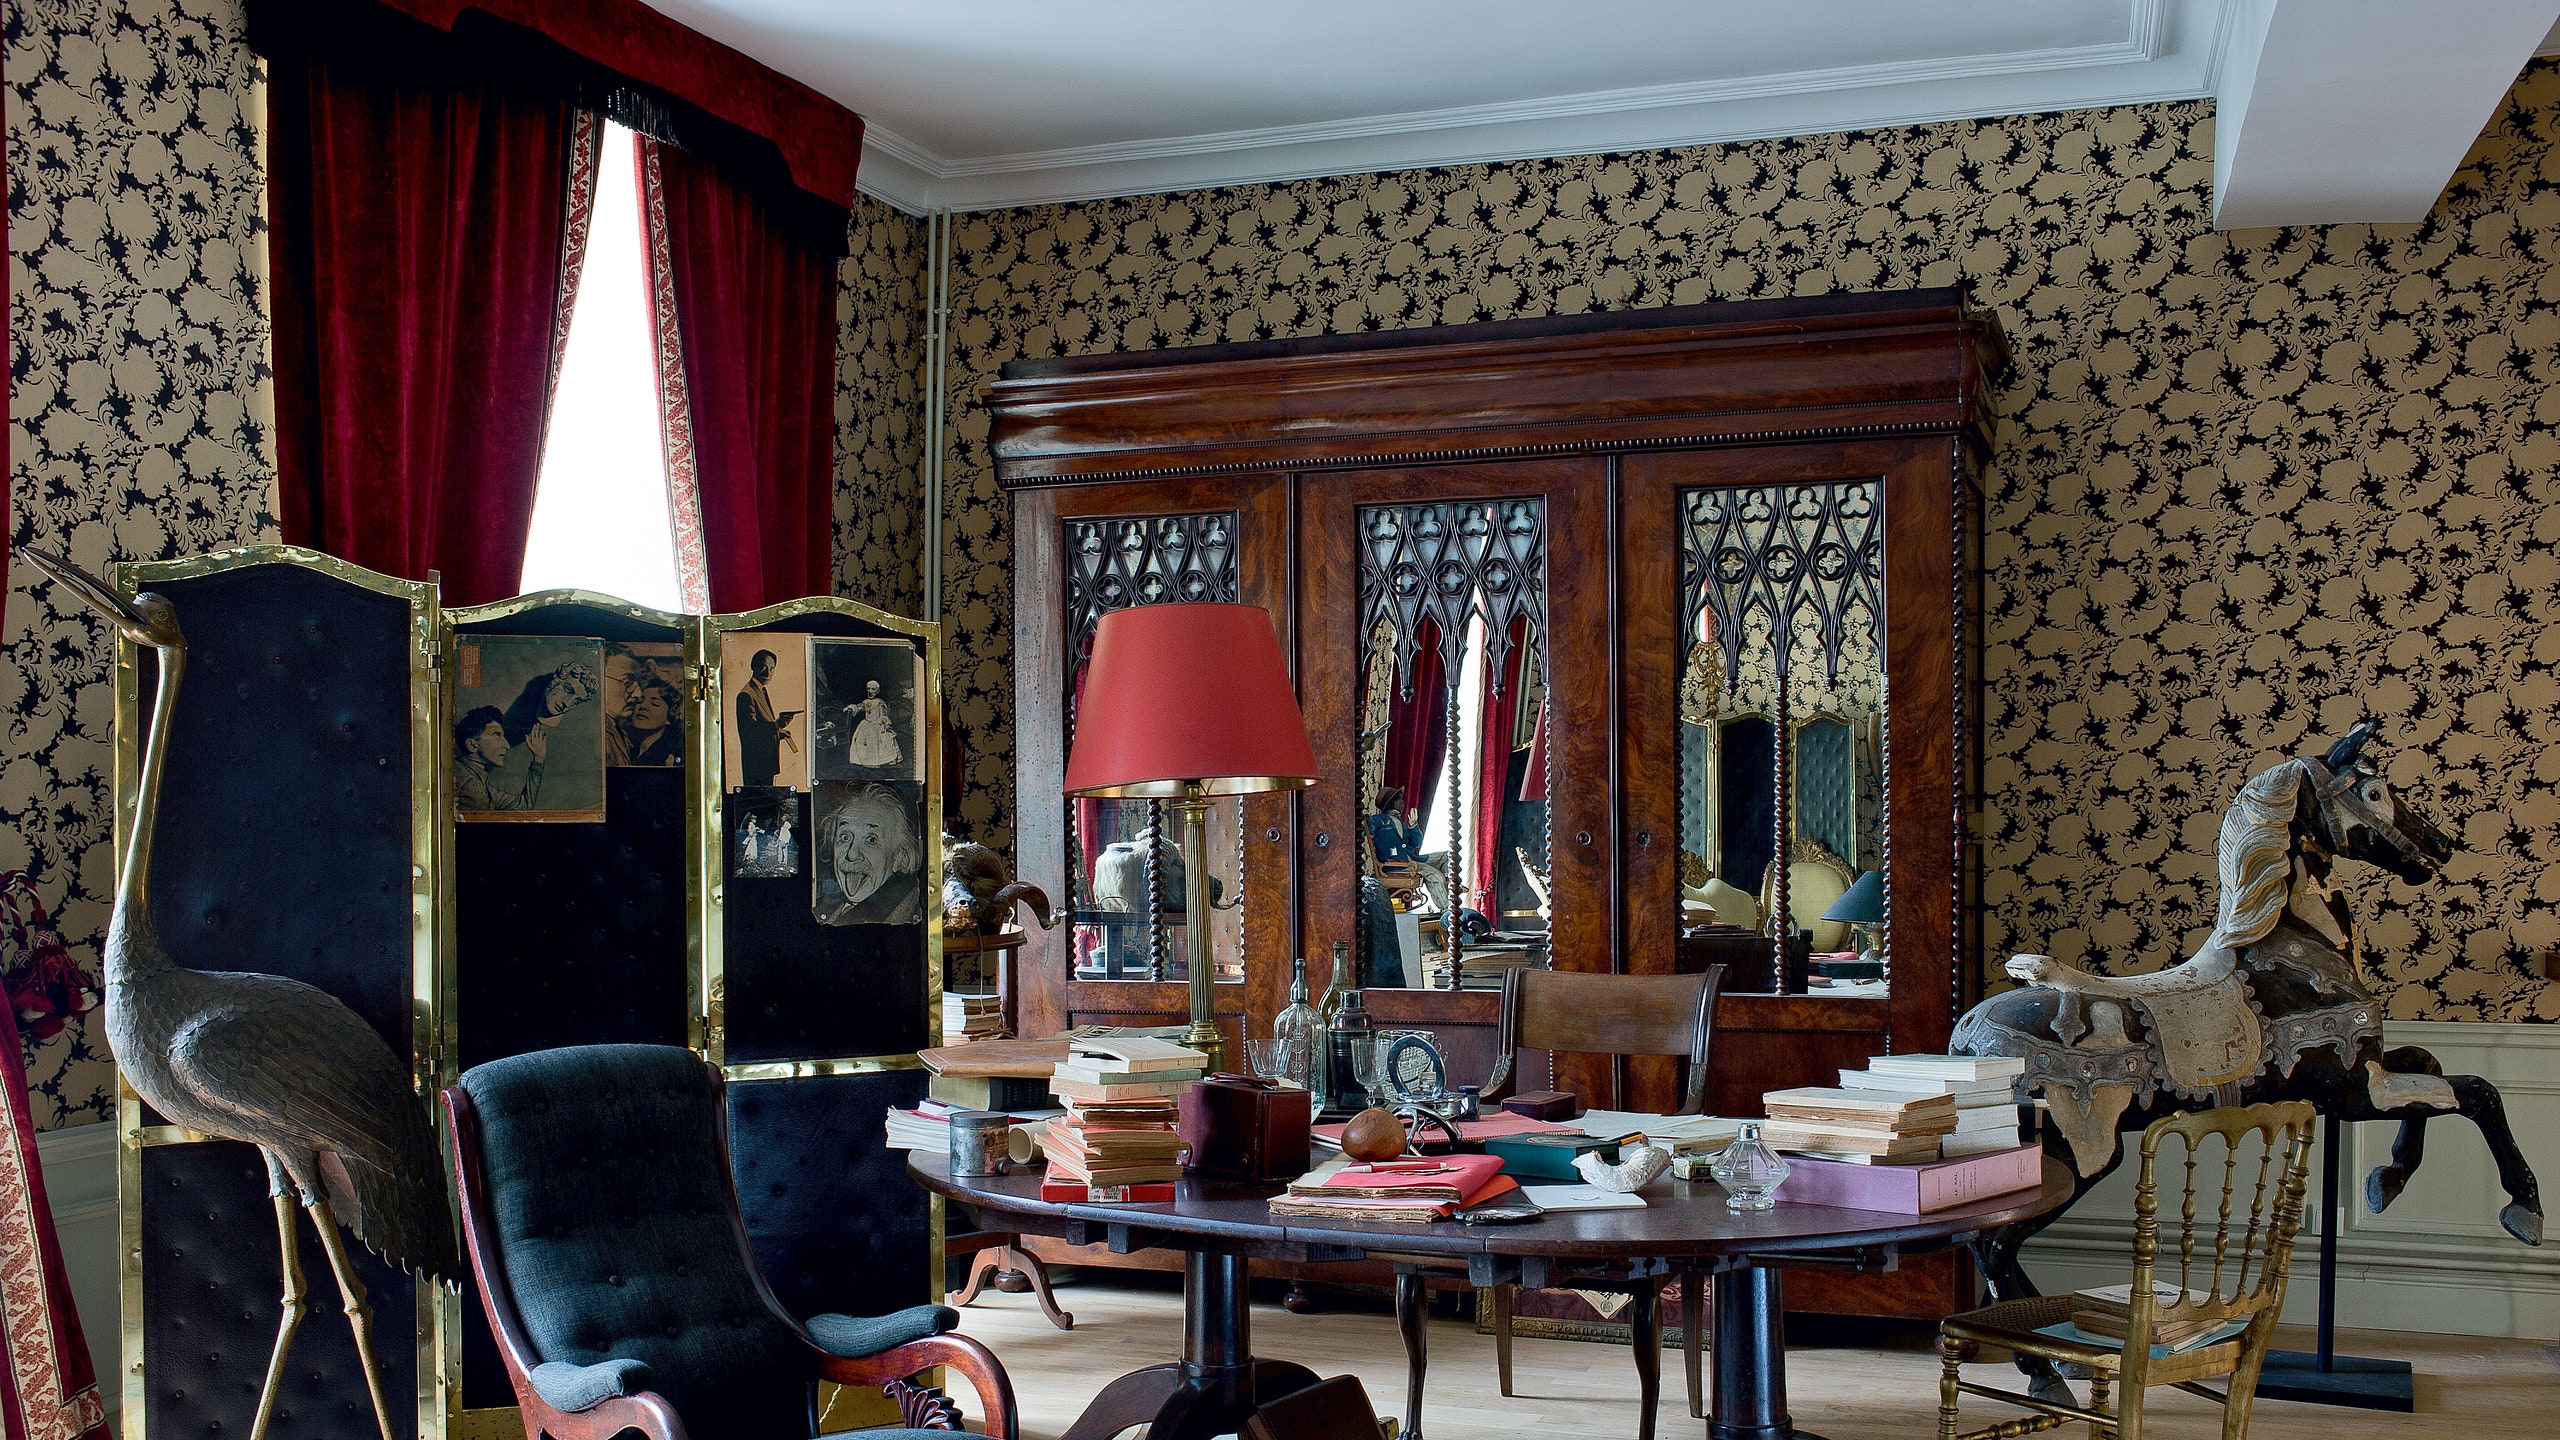 Дом поэта Жана Кокто фото интерьеров отреставрированного особняка во Франции | Admagazine